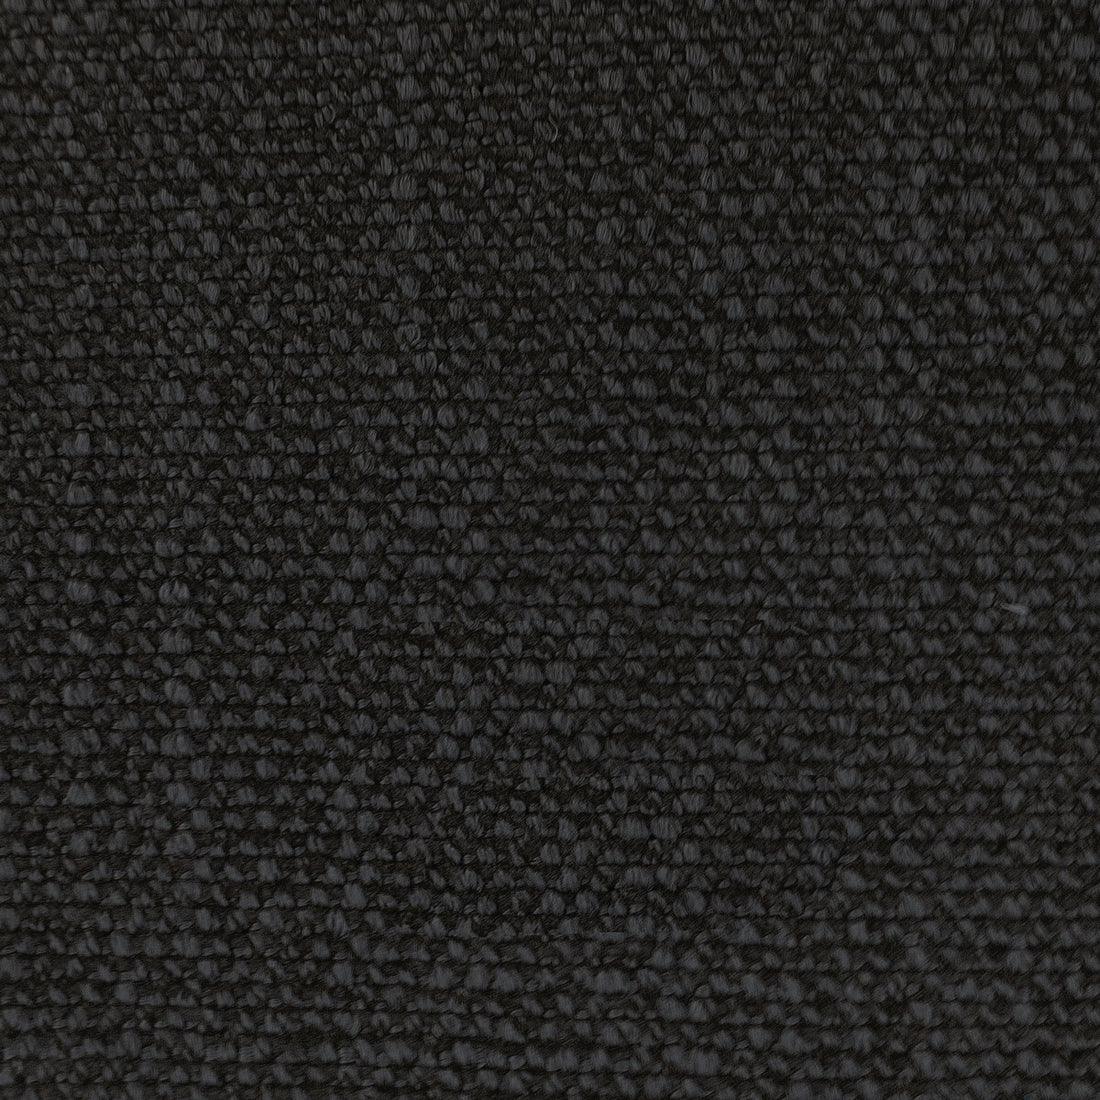 Hugo fabric in antracita color - pattern LCT1053.006.0 - by Gaston y Daniela in the Lorenzo Castillo VI collection